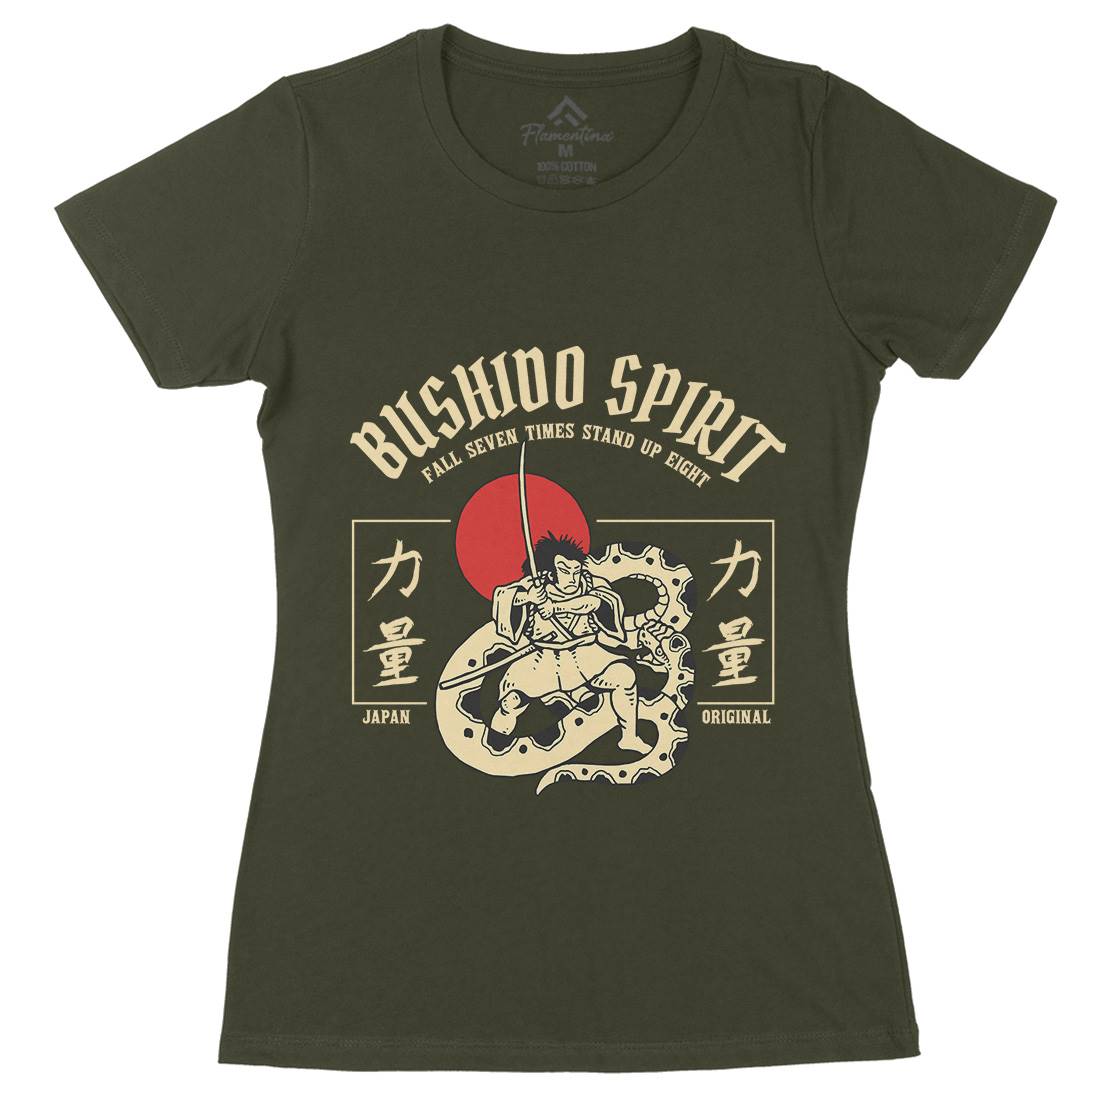 Bushido Spirit Womens Organic Crew Neck T-Shirt Warriors C731